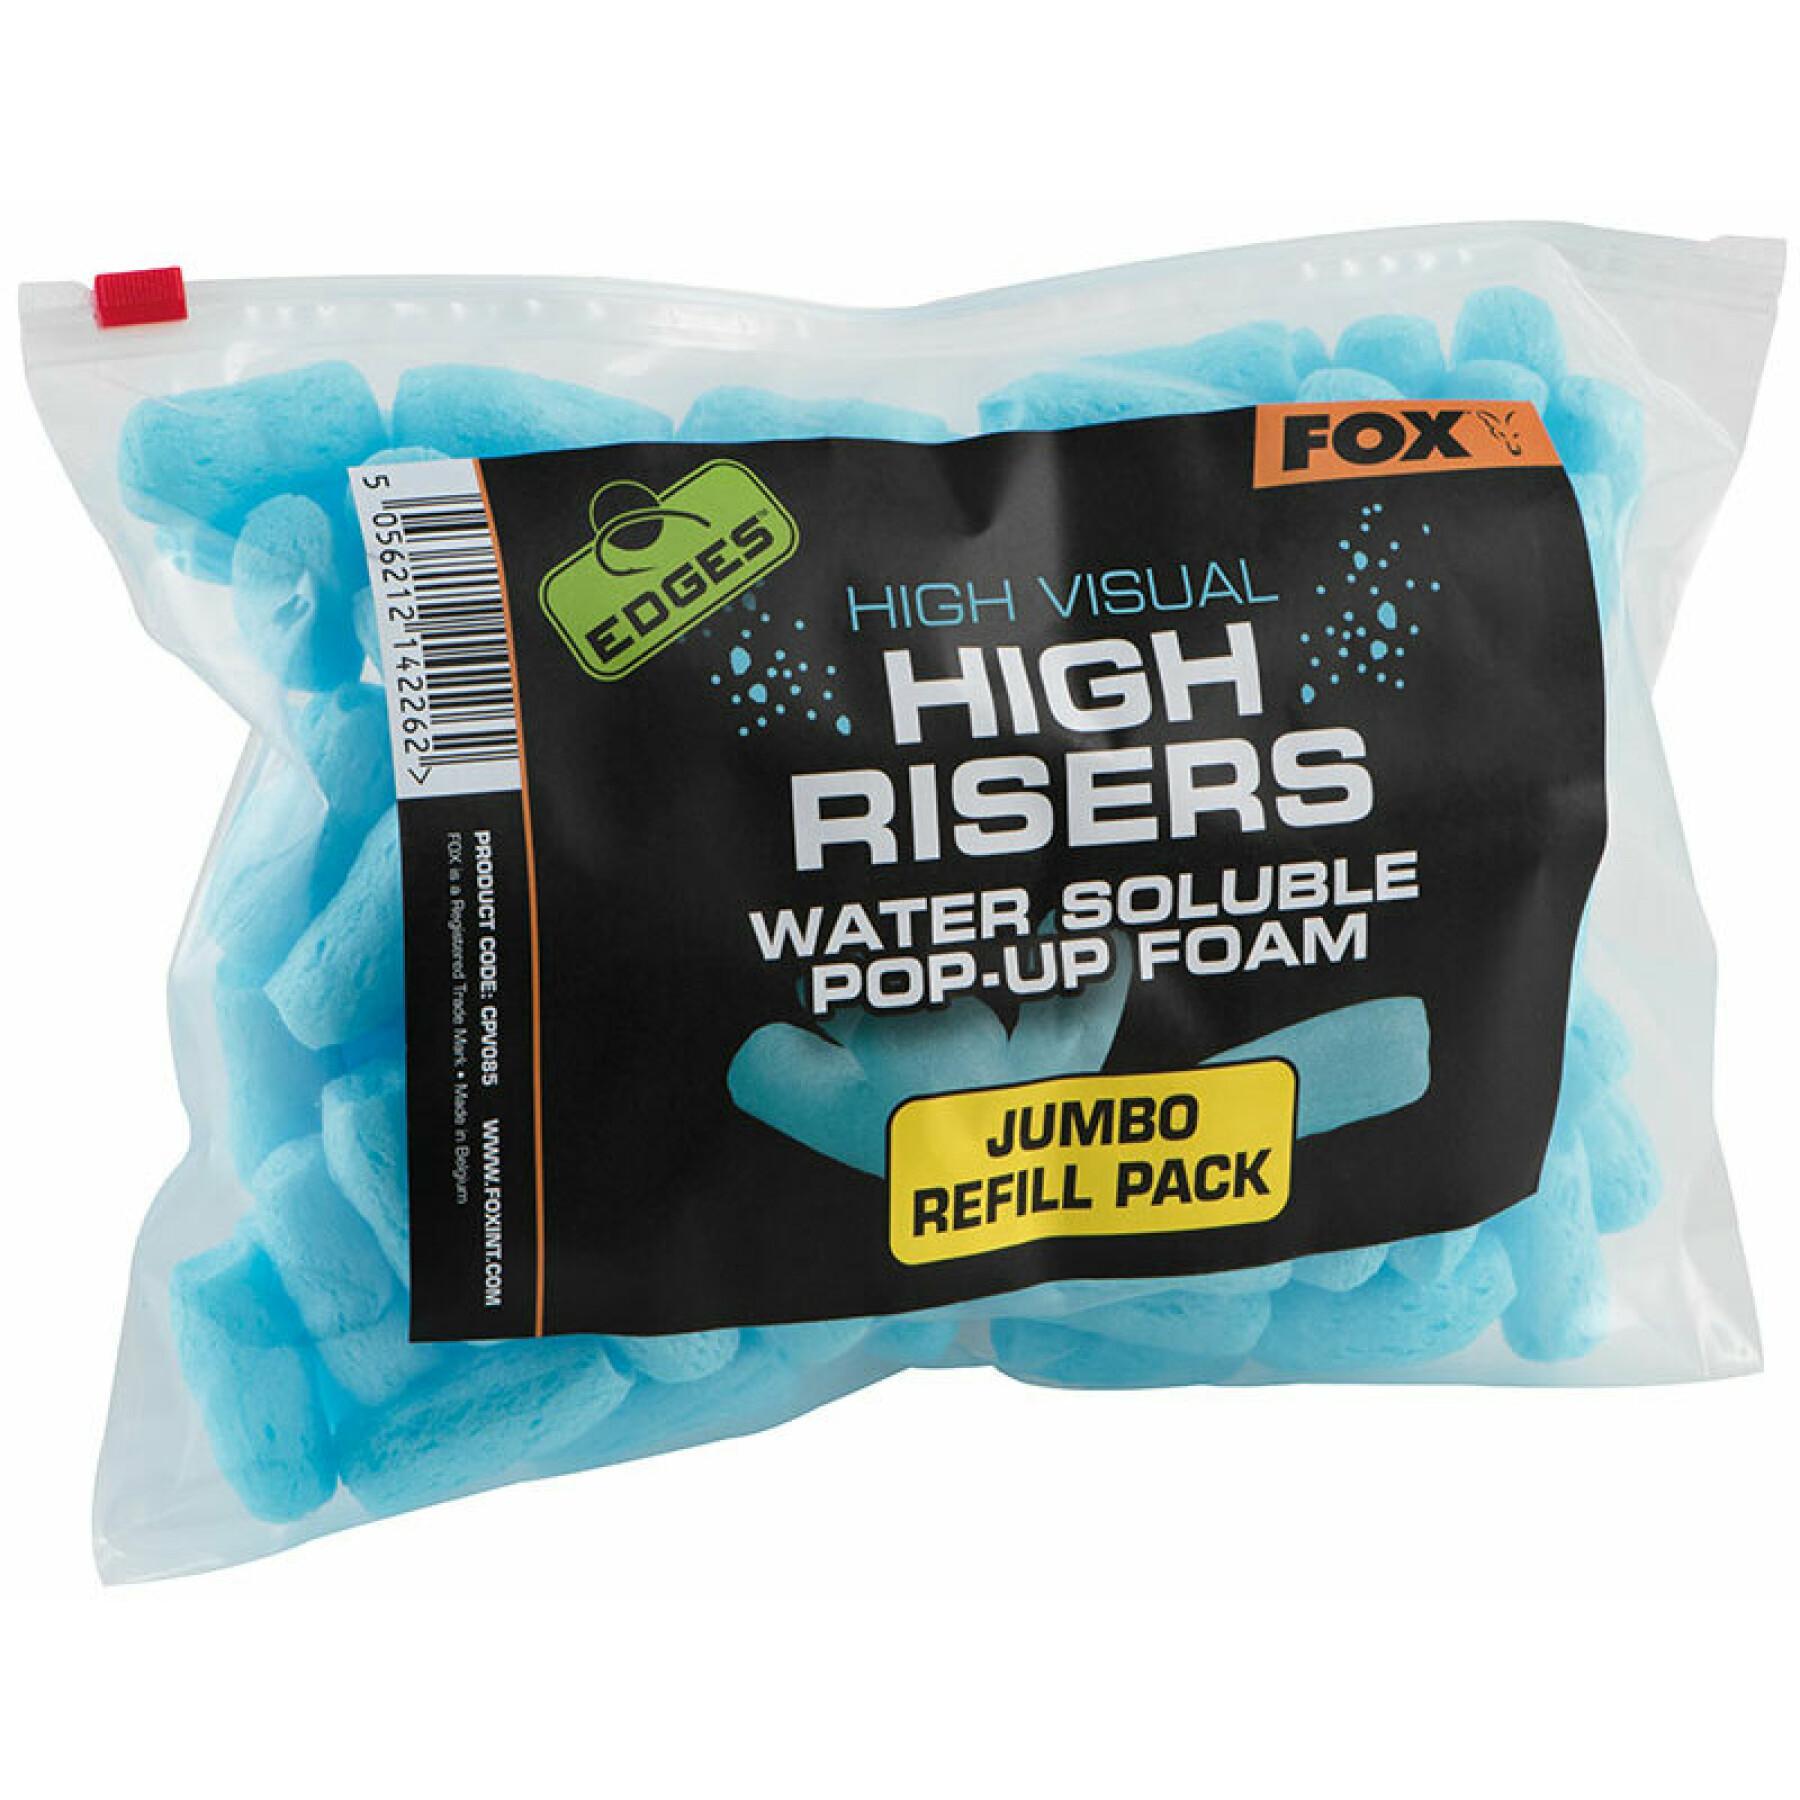 Schiuma Fox High Visual High Risers